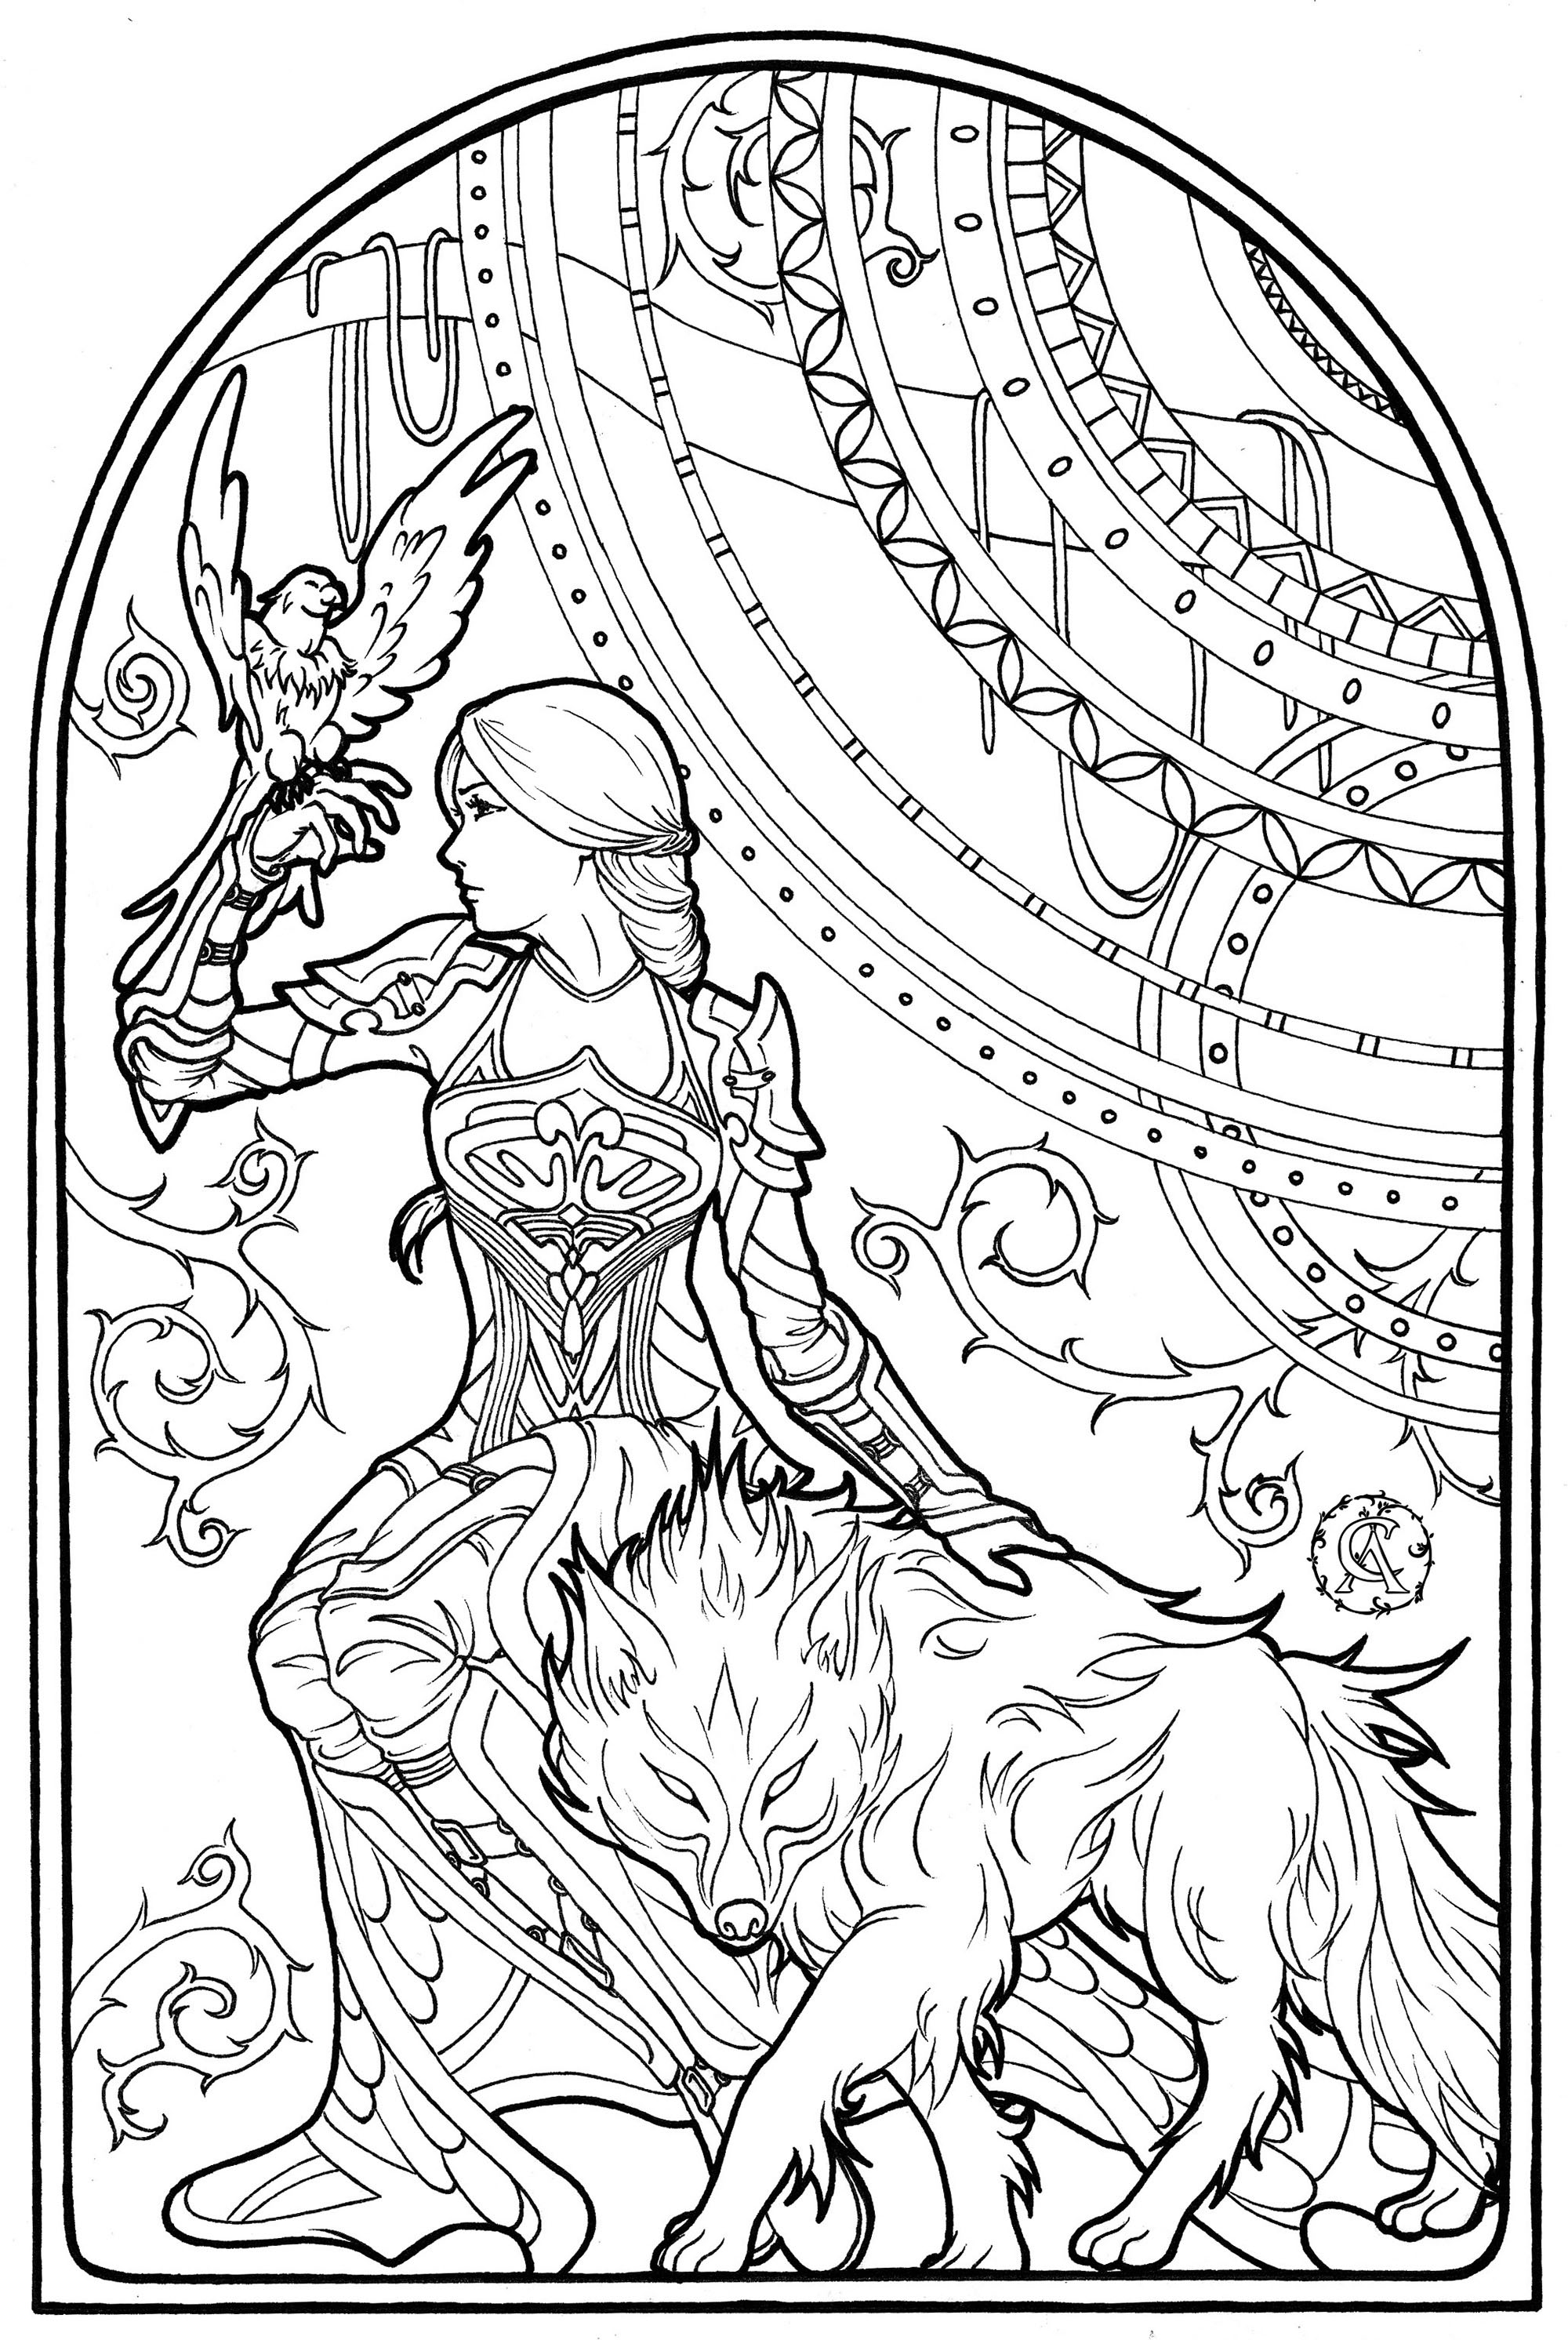 Esta intrépida mujer está en compañía de su halcón y su lobo encantado. Dibujado en estilo Art Nouveau